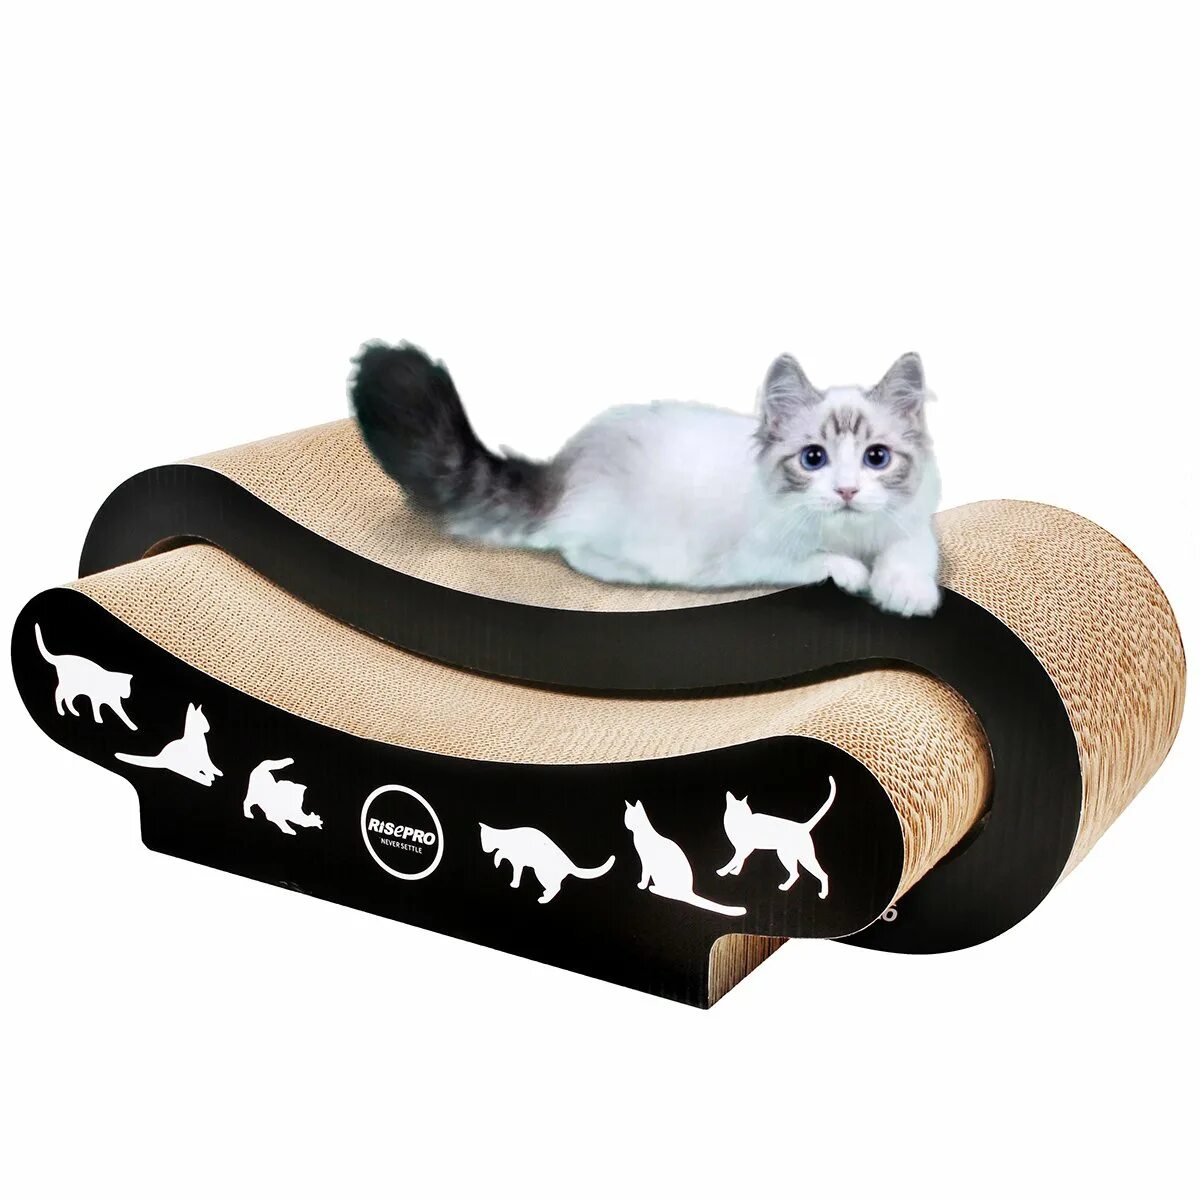 Cat scratcher. Кошачья кровать. Дизайн с кошкой. Cat 2y8097.